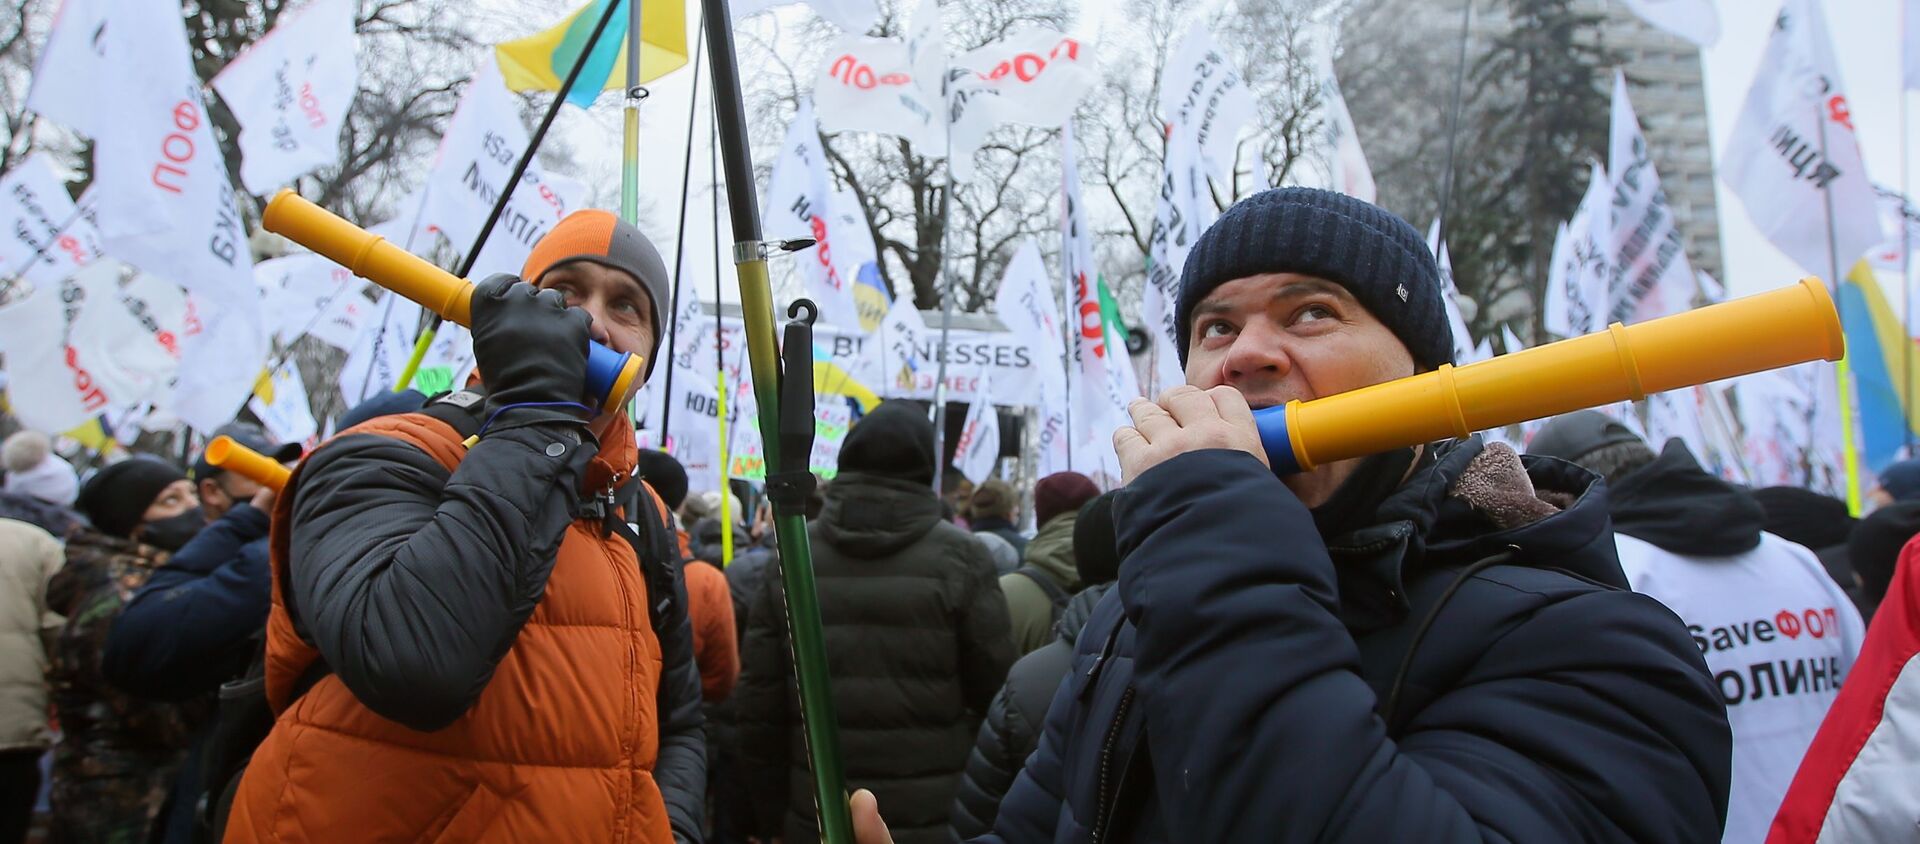 Участники митинга у здания Верховной рады Украины - Sputnik Узбекистан, 1920, 17.12.2020